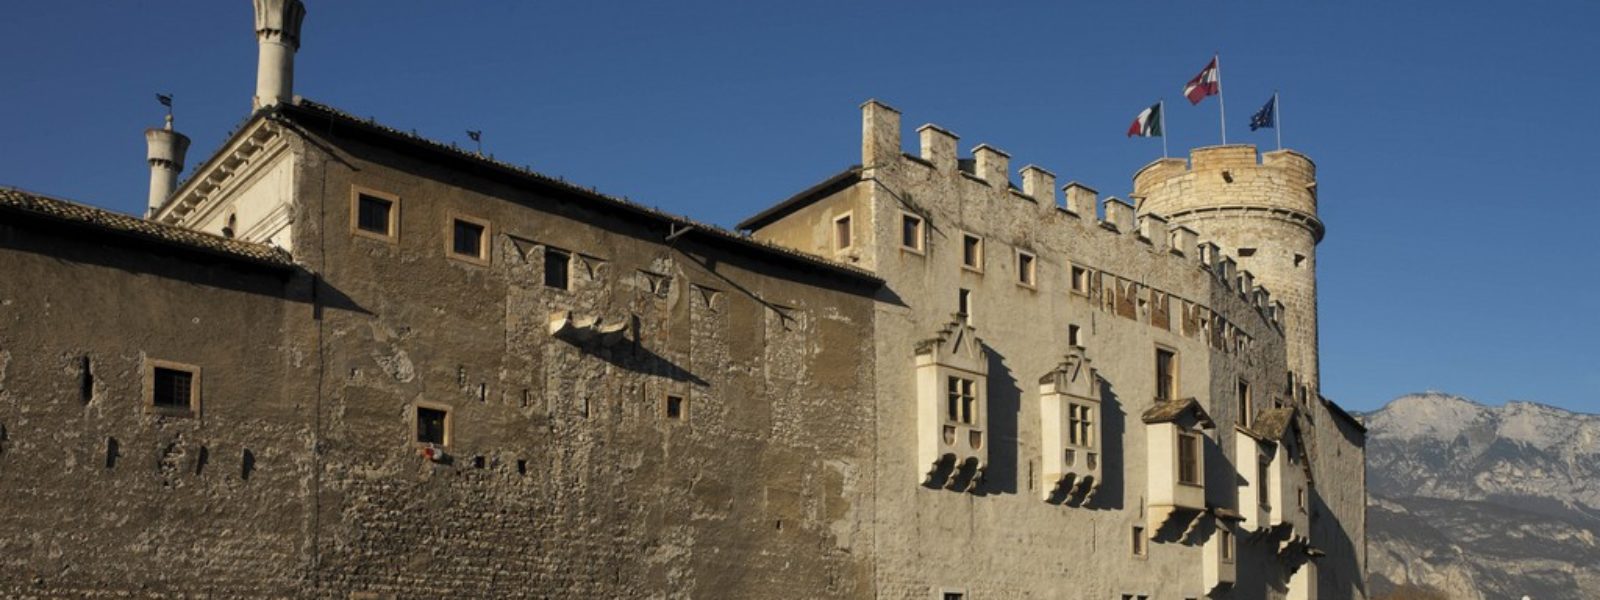 Trento-Castello-del-Buonconsiglio-foto-Campanile.